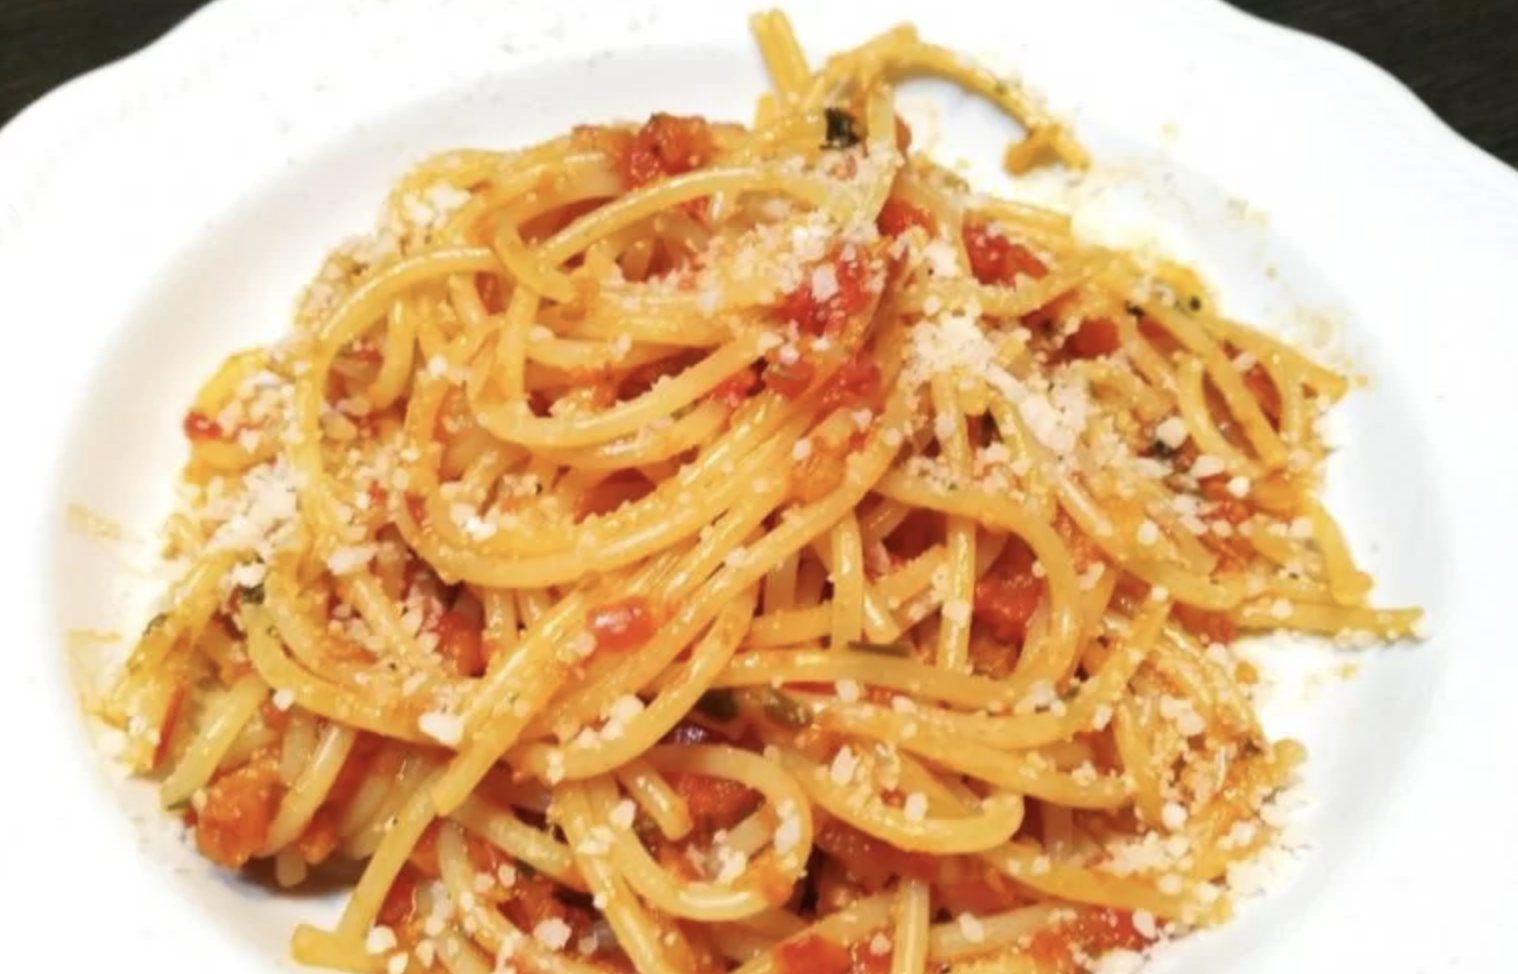 spaghetti-alla-carrettiera-alla-siciliana:-ecco-come-bisogna-mettere-il-pomodoro.-“mai-cuocerlo-cosi”